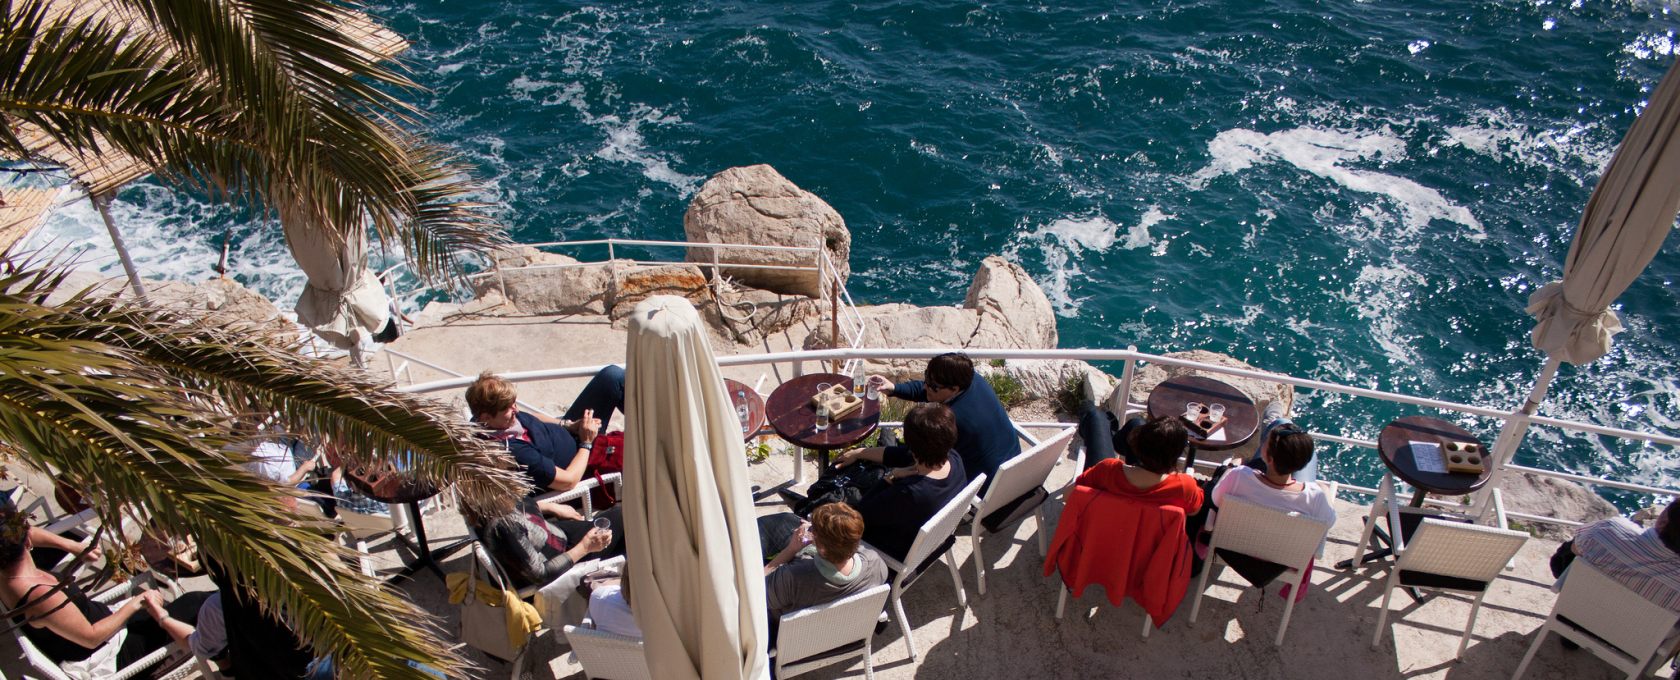 Вино, пляжи и мальки: бюджетный день в Дубровнике